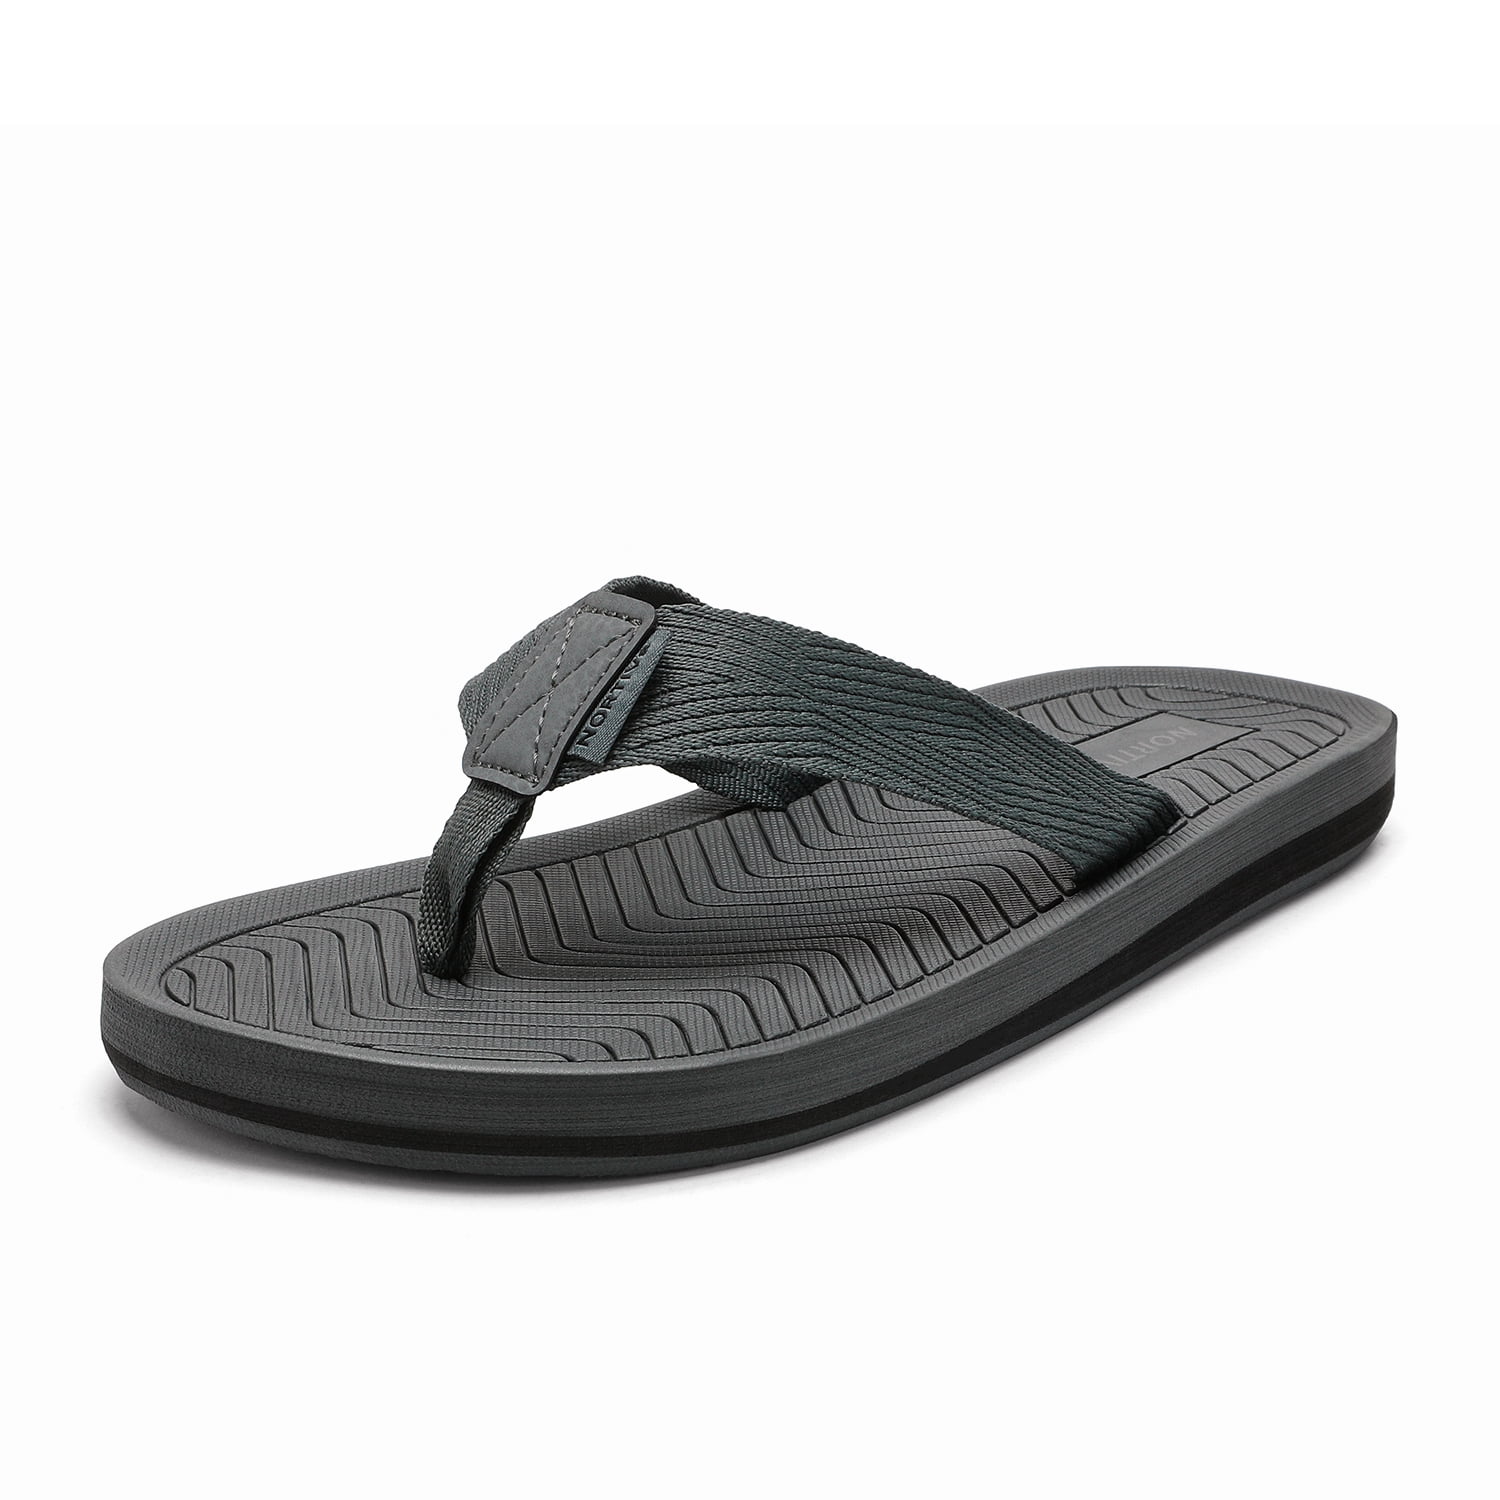 NORTIV 8 Men's Flip Flops Thong Sandals Comfortable Light Weight Beach Shoes 